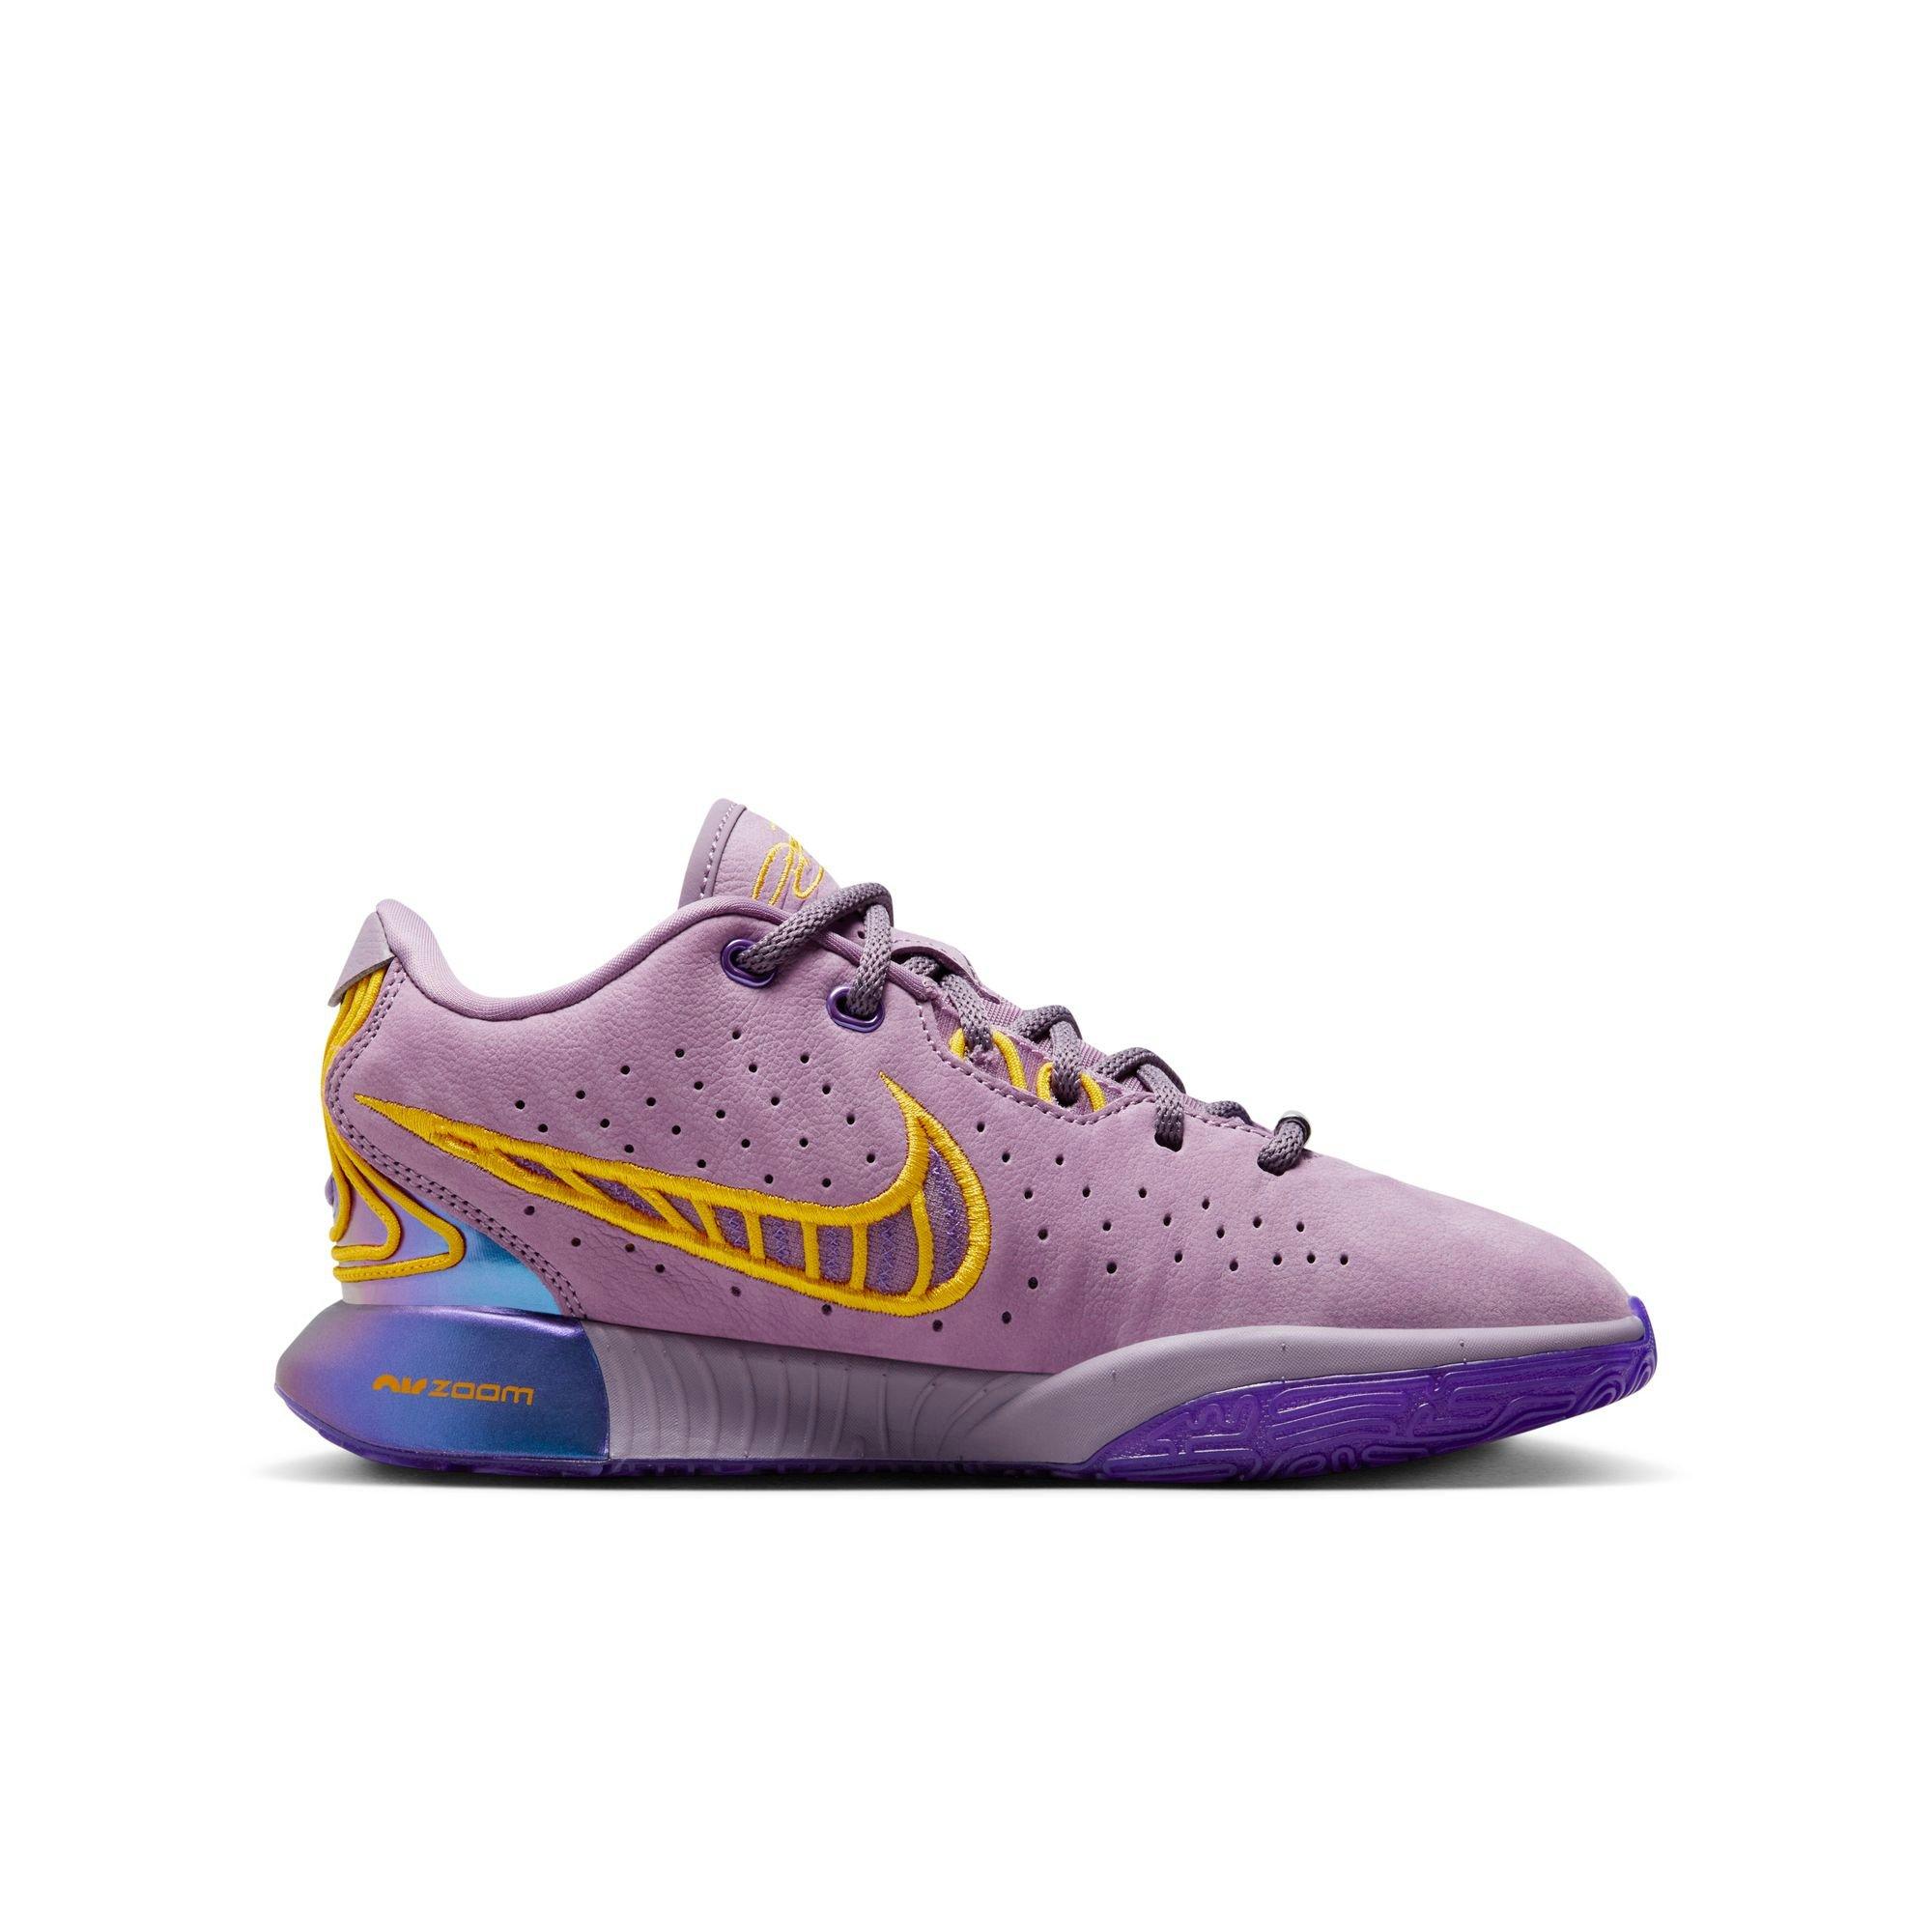 Nike Lebron Ambassador 13 Yellow Purple Basketball Shoes/Sneakers-Free  NBAsocks